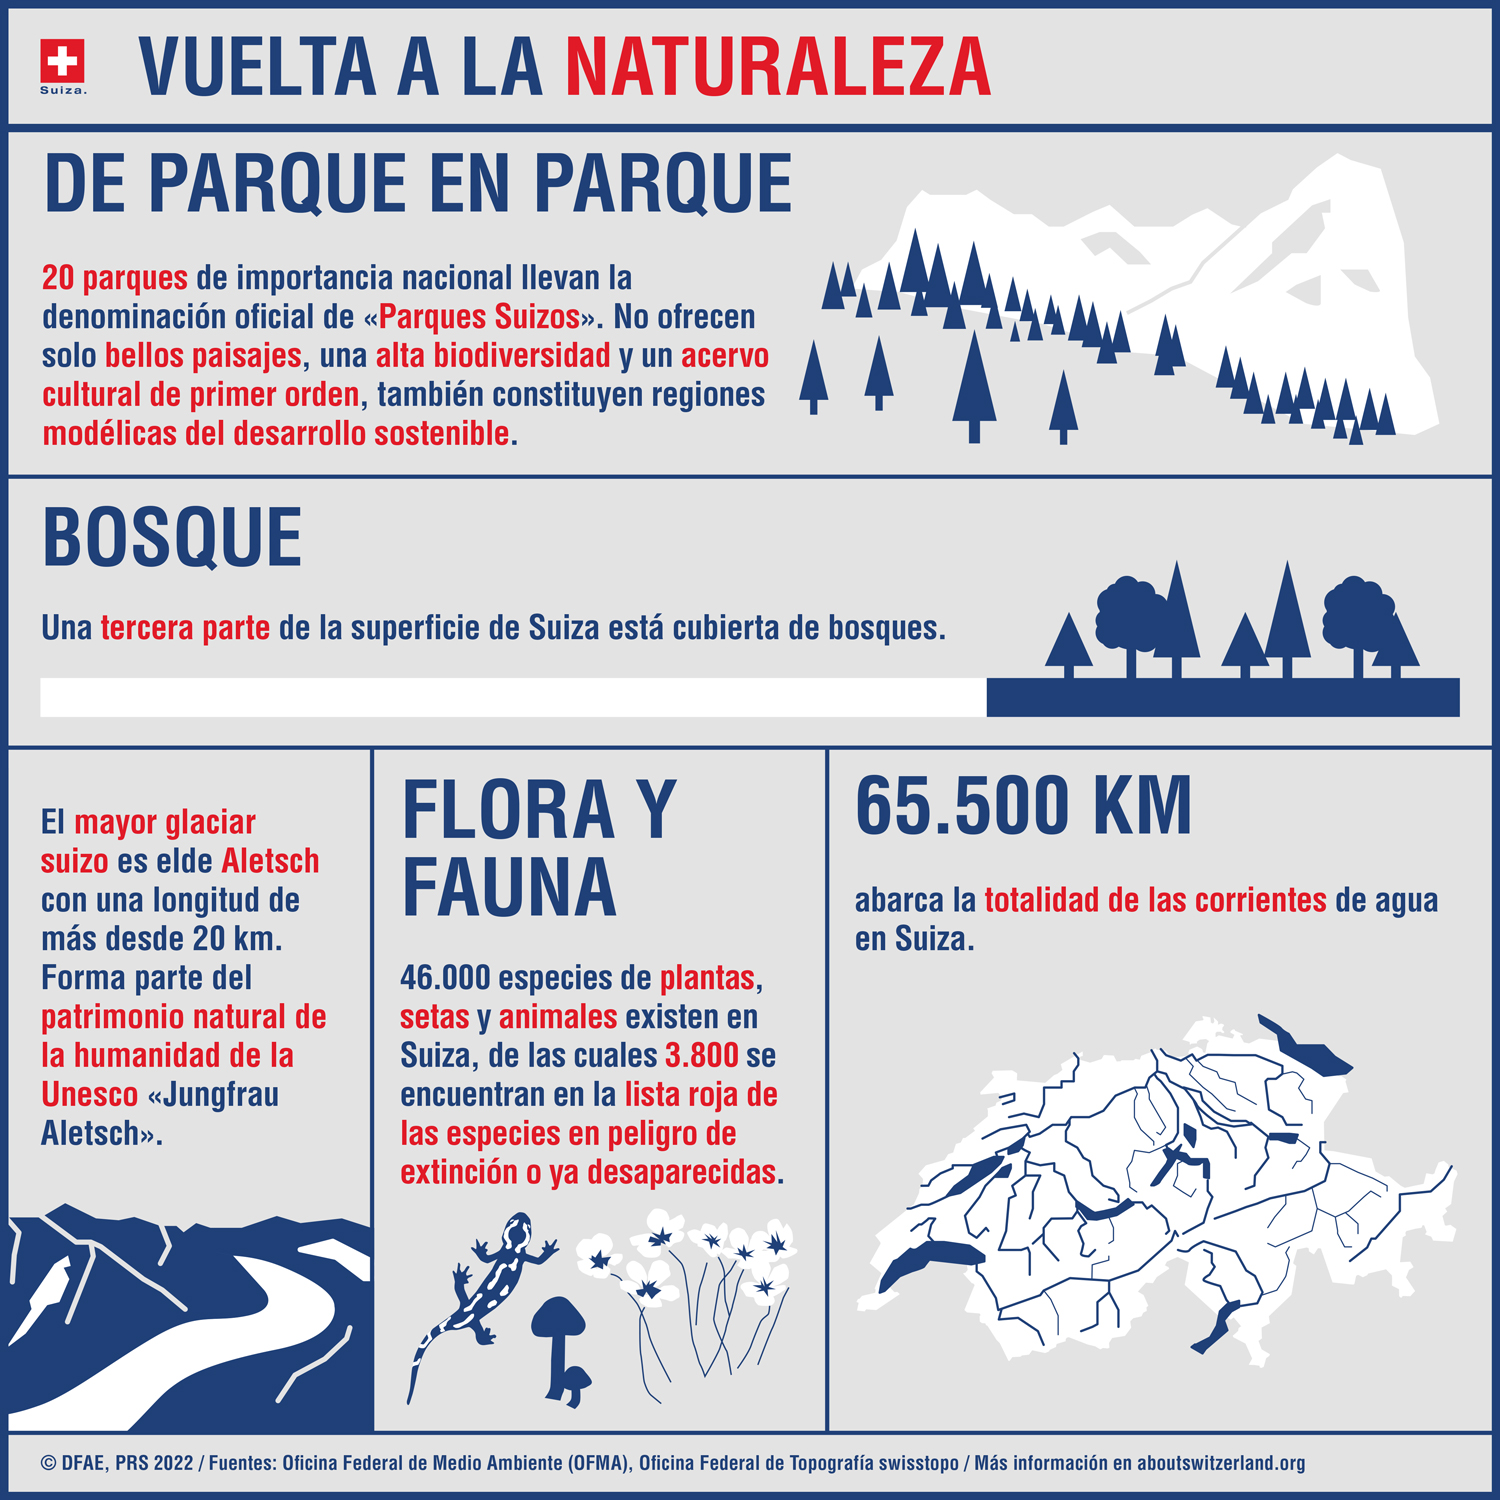  Infografía sobre Suiza. 20 parques nacionales. Los bosques cubren un tercio de la superficie nacional del país. El glaciar Aletsch está inscrito en la lista del patrimonio mundial de la Unesco.  